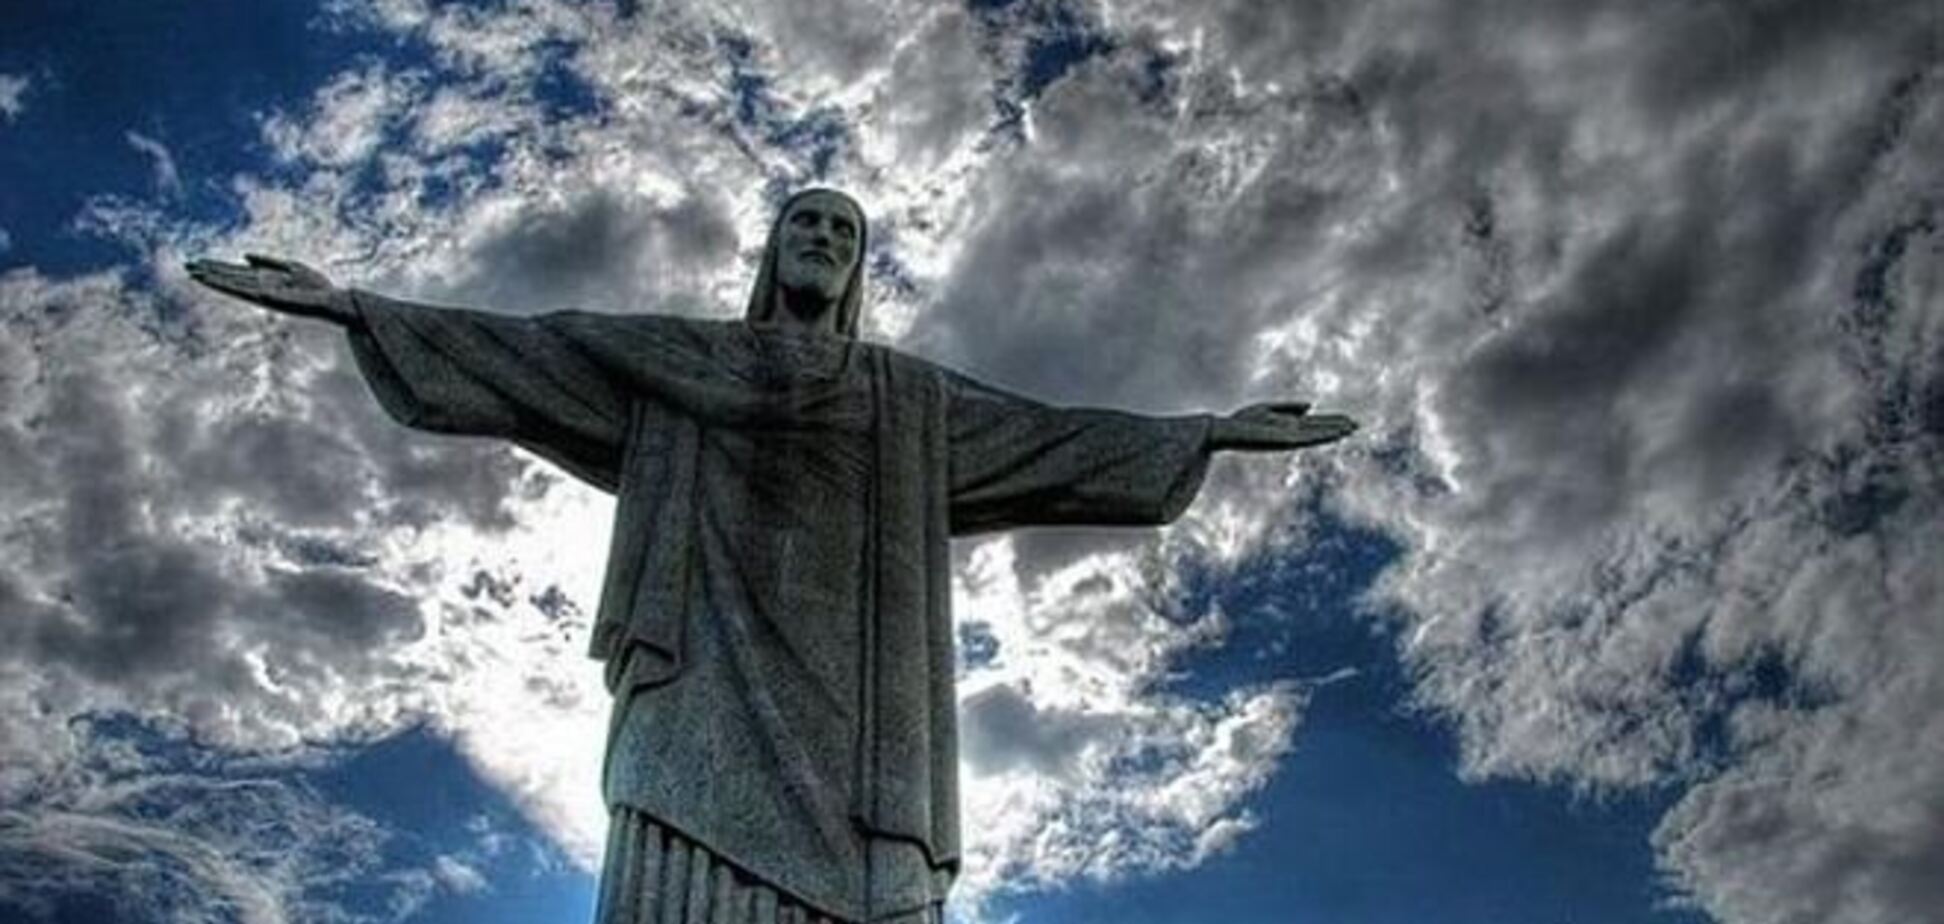 Молния отколола палец на руке статуи Христа в Бразилии